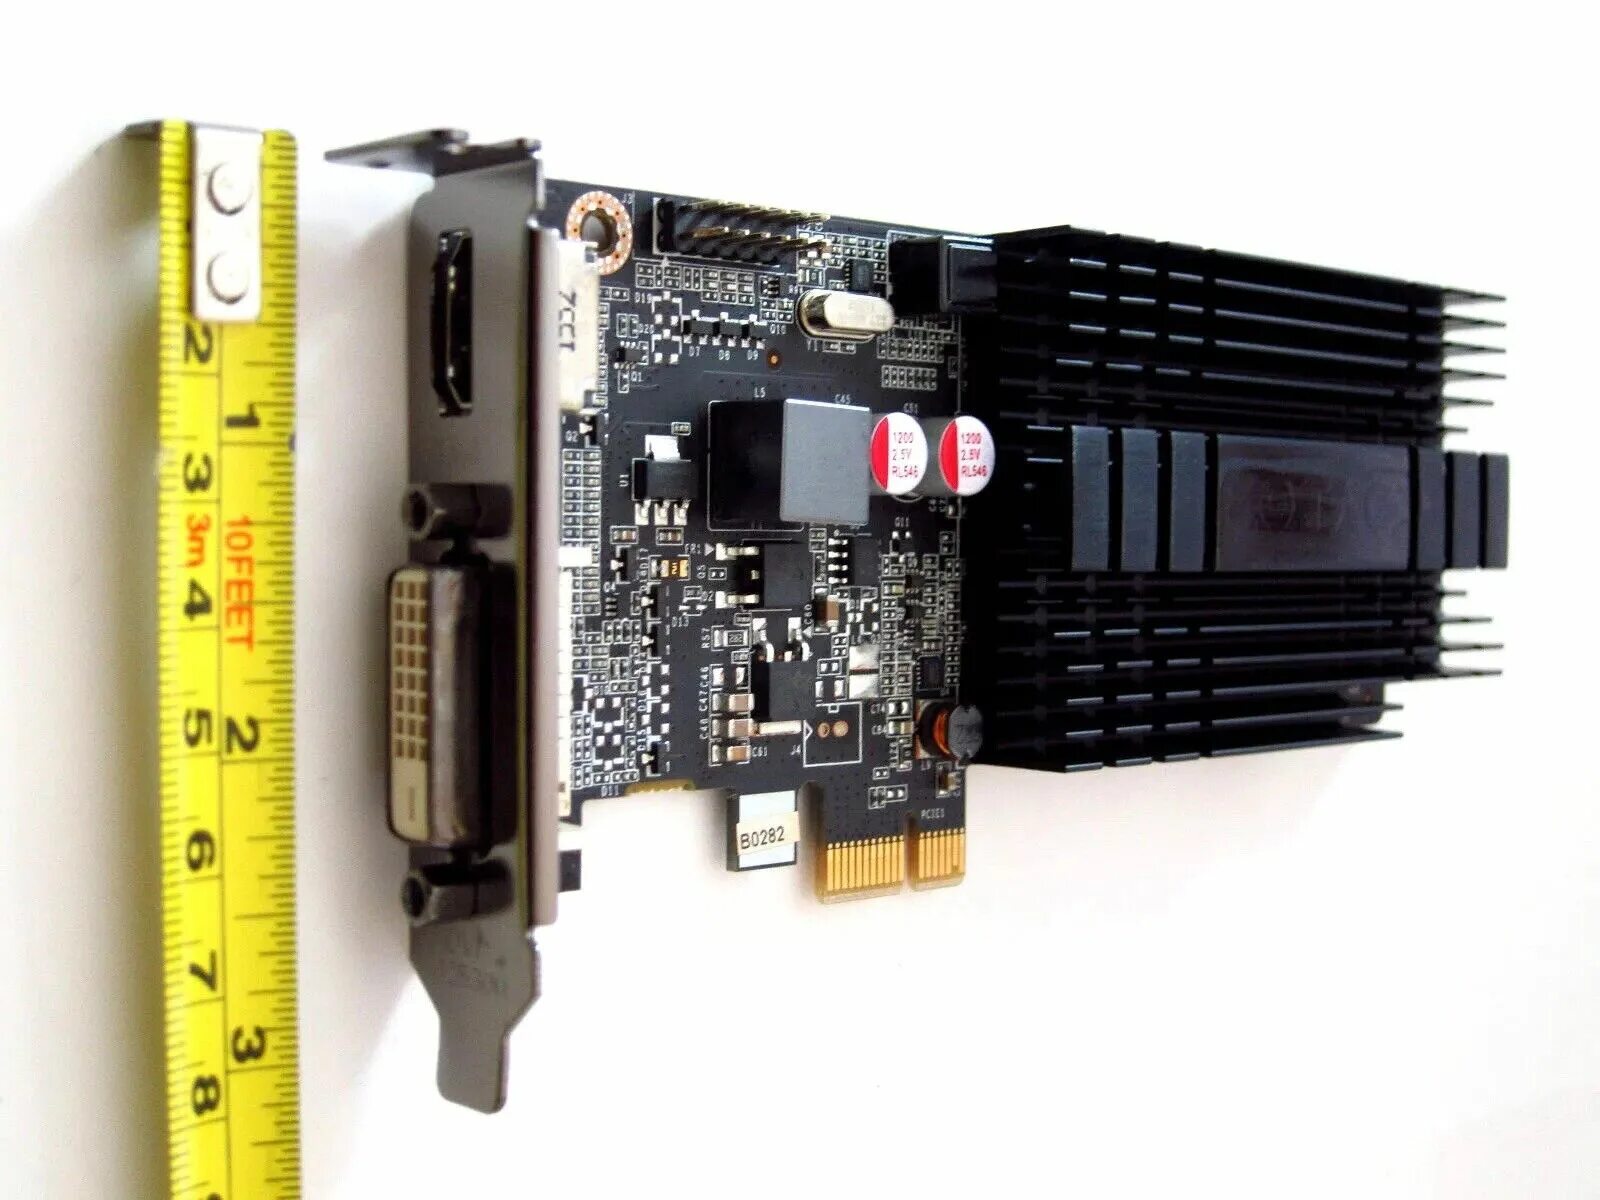 Видеокарта PCI-E x1. PCI Express x1 видеокарта. Слоты PCIE x1. Видеокарта PCI x1. Слот pci e x1